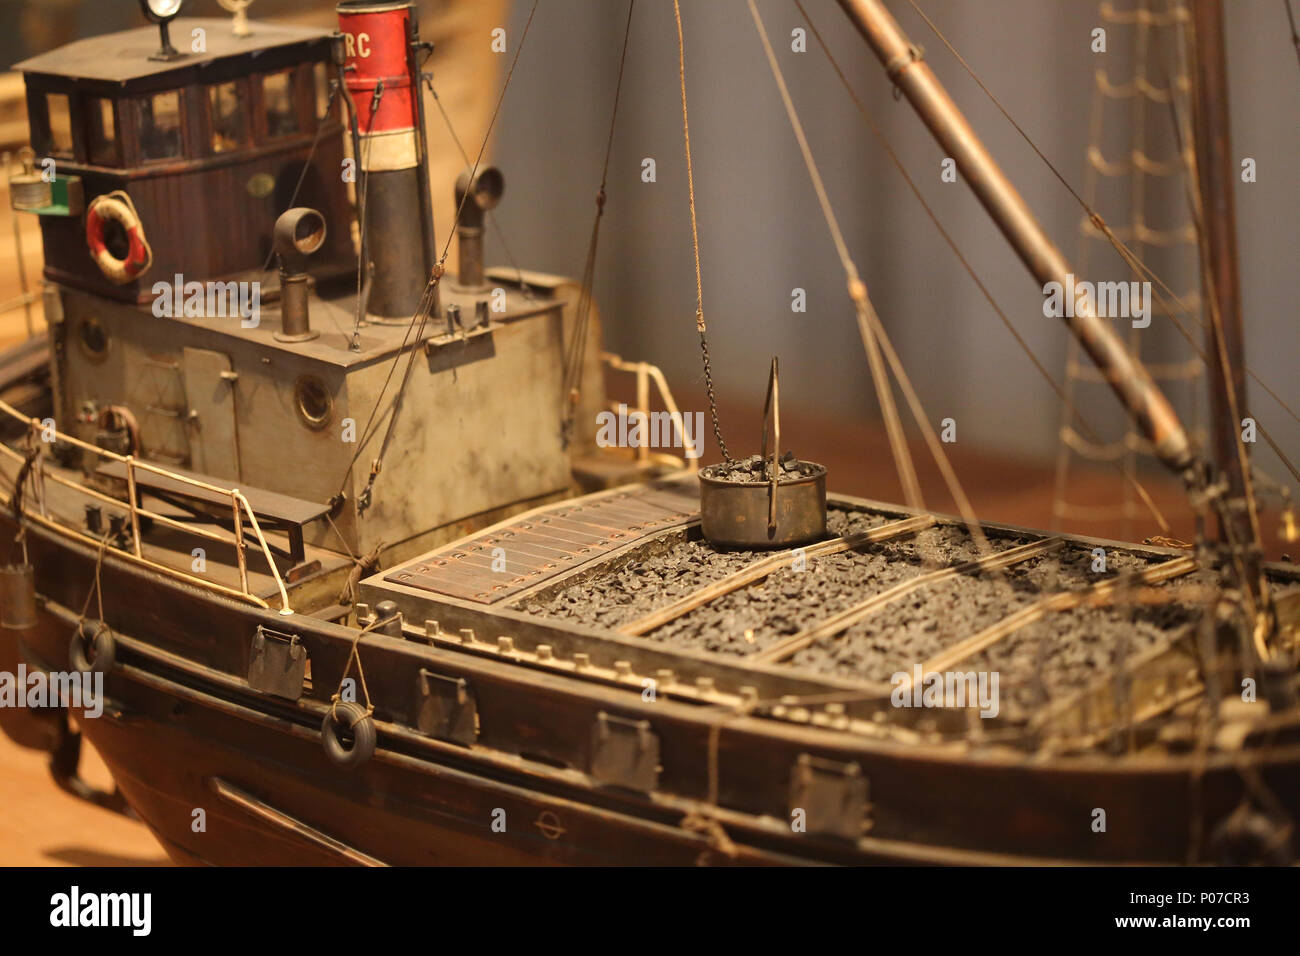 Modèle de Cap Roig. Petit bateau d'Tansporting le charbon. Échelle : 1:30. Musée maritime de Barcelone, Catalogne, Espagne. Banque D'Images